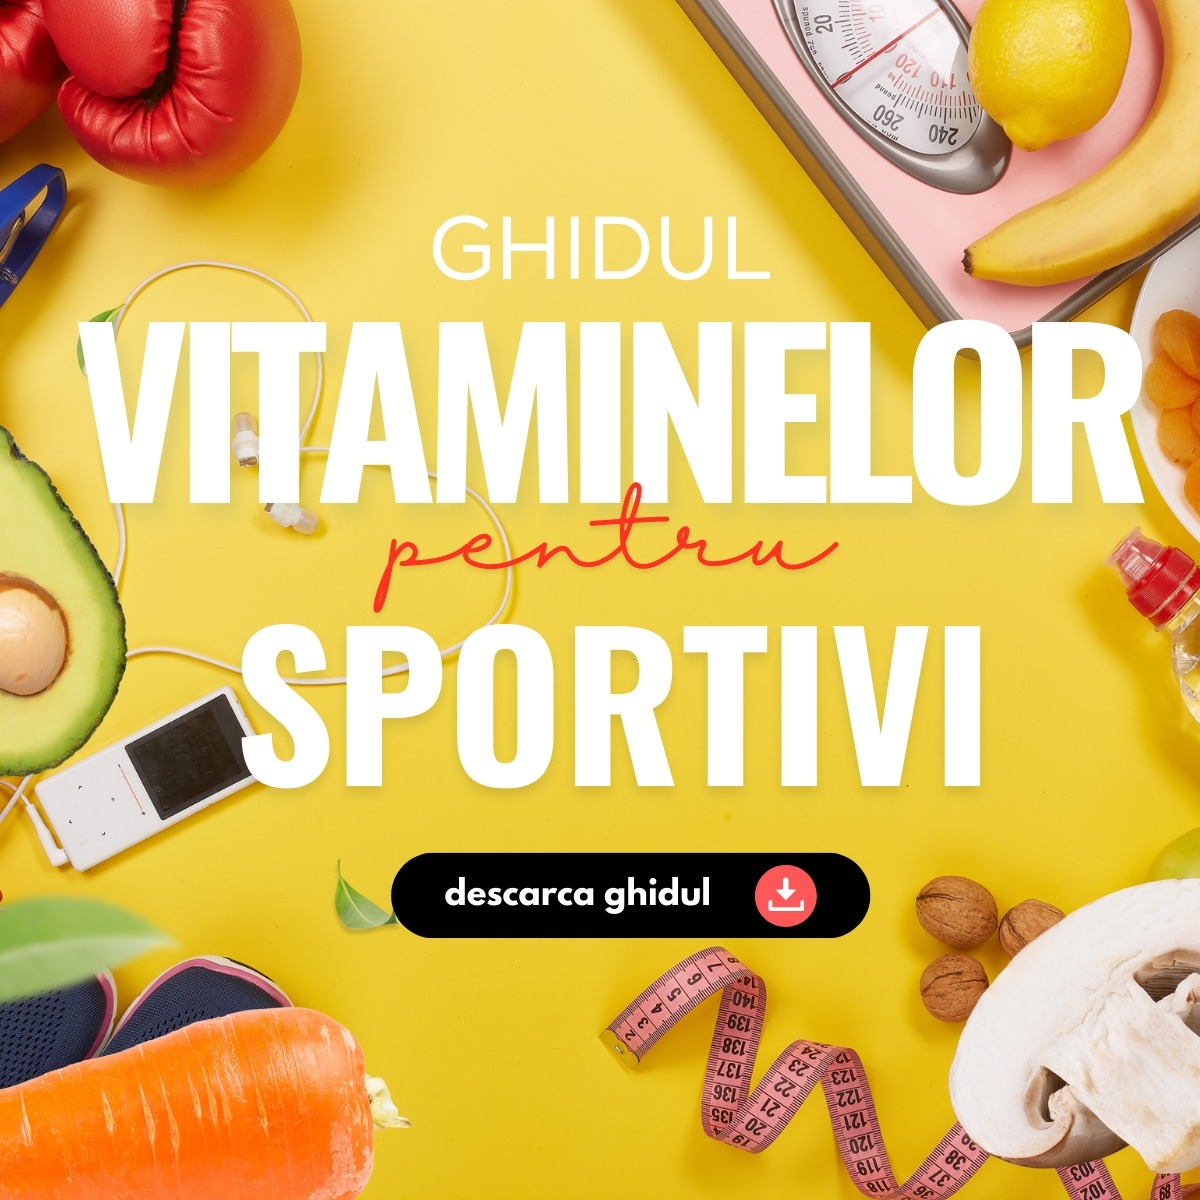 Ghidul Vitaminelor pentru Sportivi